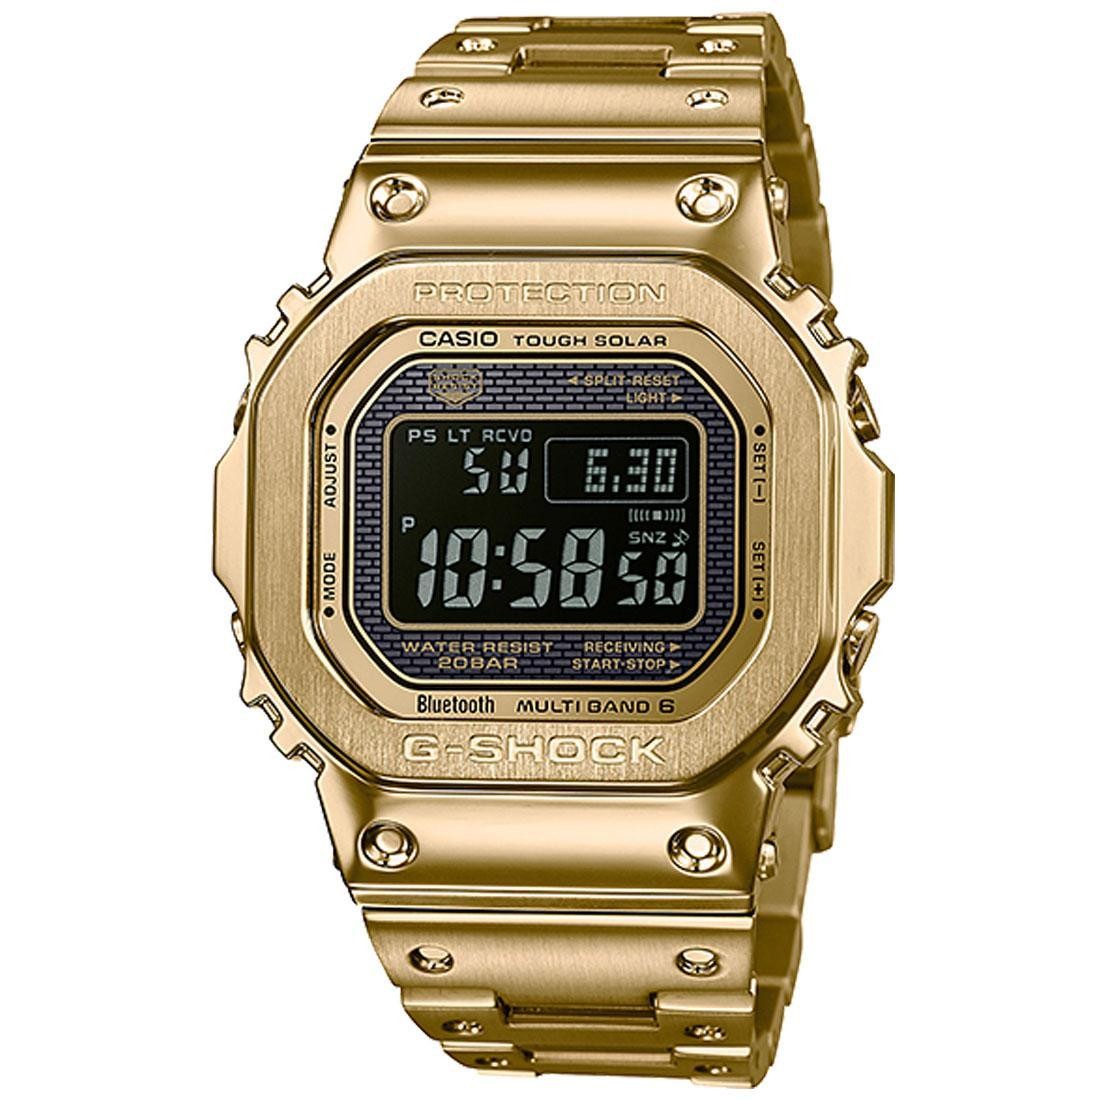 G-Shock Watches GMWB5000 Metal (gold / metal)